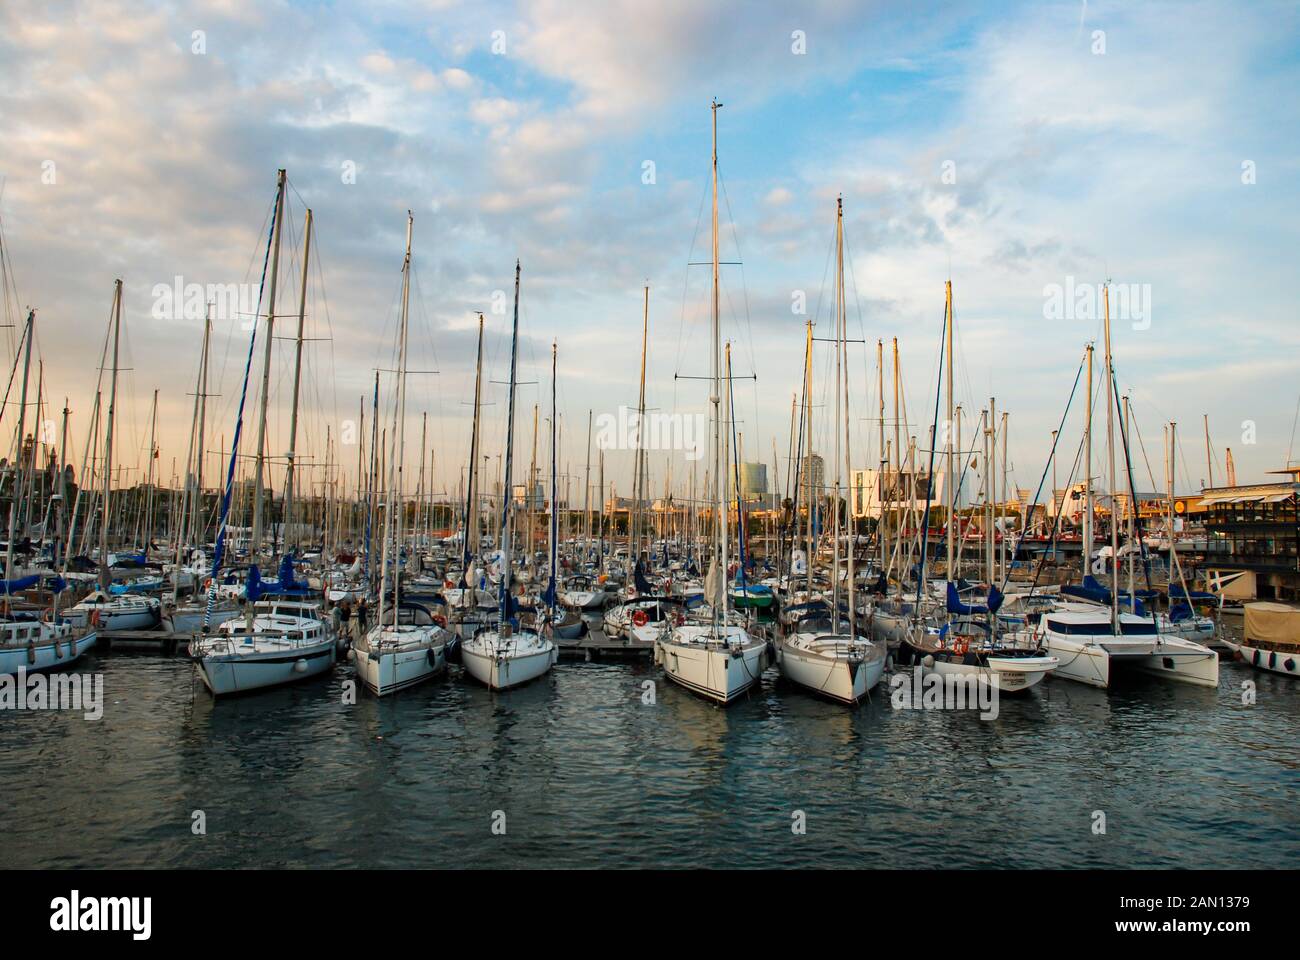 Port Vell, Barcelona, Spanien - September 2013: Innere Hafen von Port Vell in der Stadt Barcelona. Die marina Häuser Yachten und Boote. Stockfoto